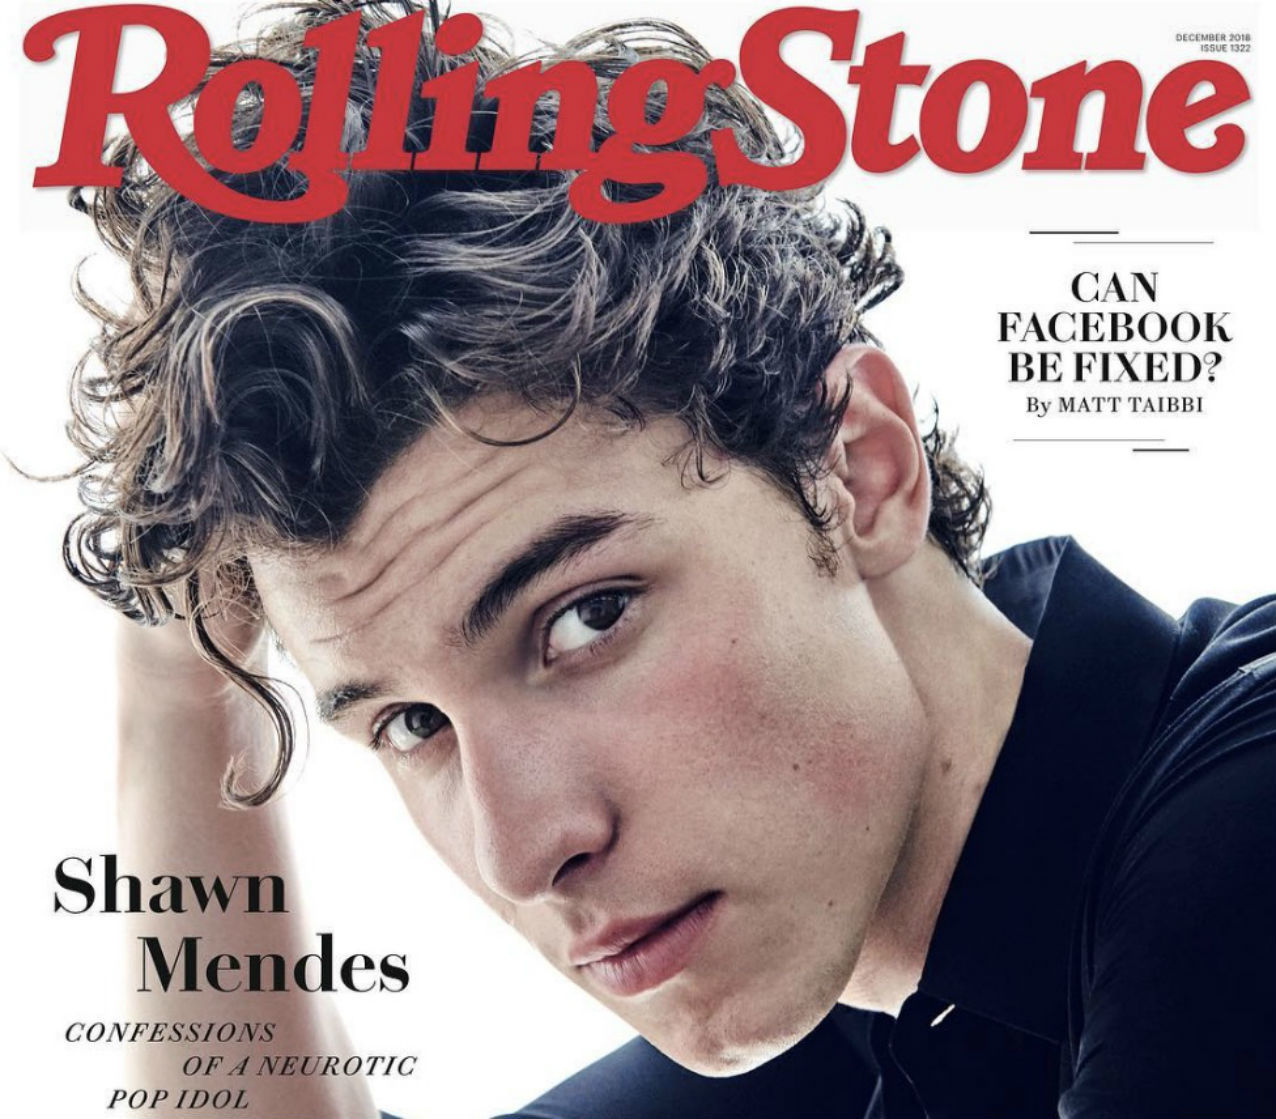 El cantante Shawn Mendes desmiente su homosexualidad en la revista...